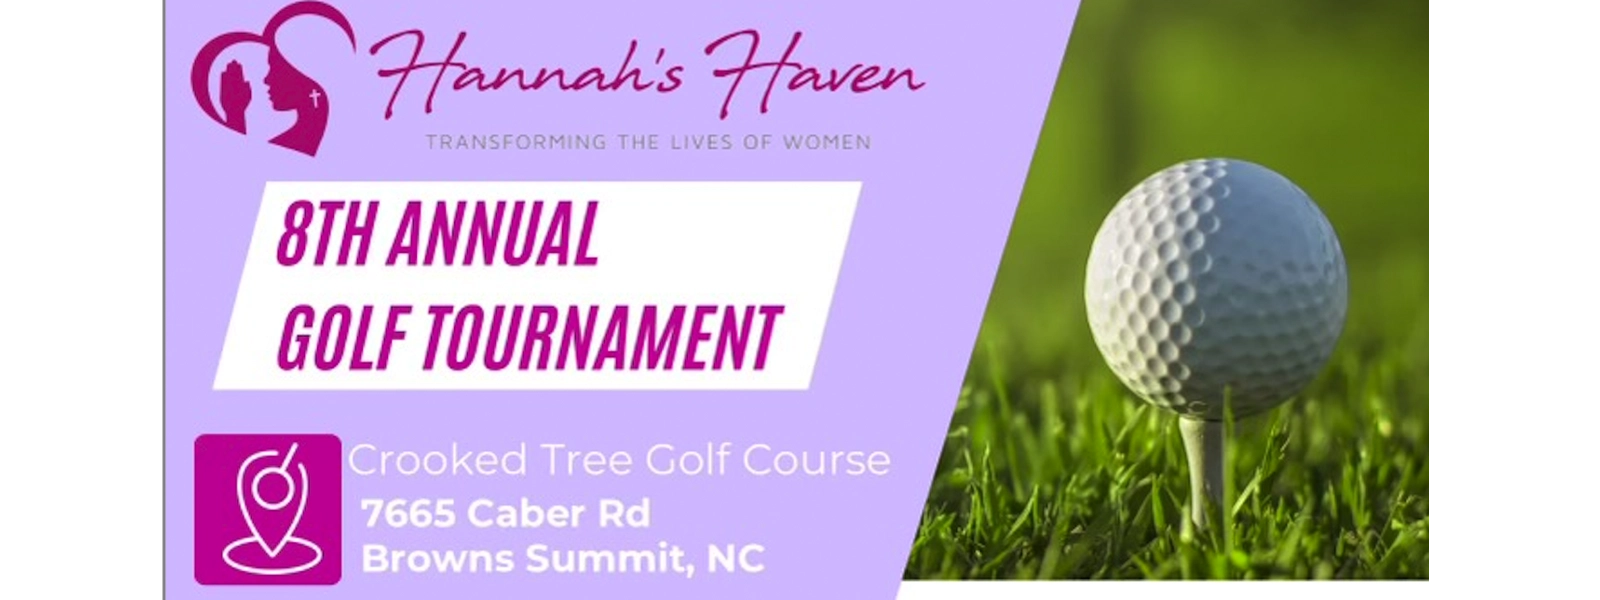 Hannah's Haven 8th Annual Golf Tournament